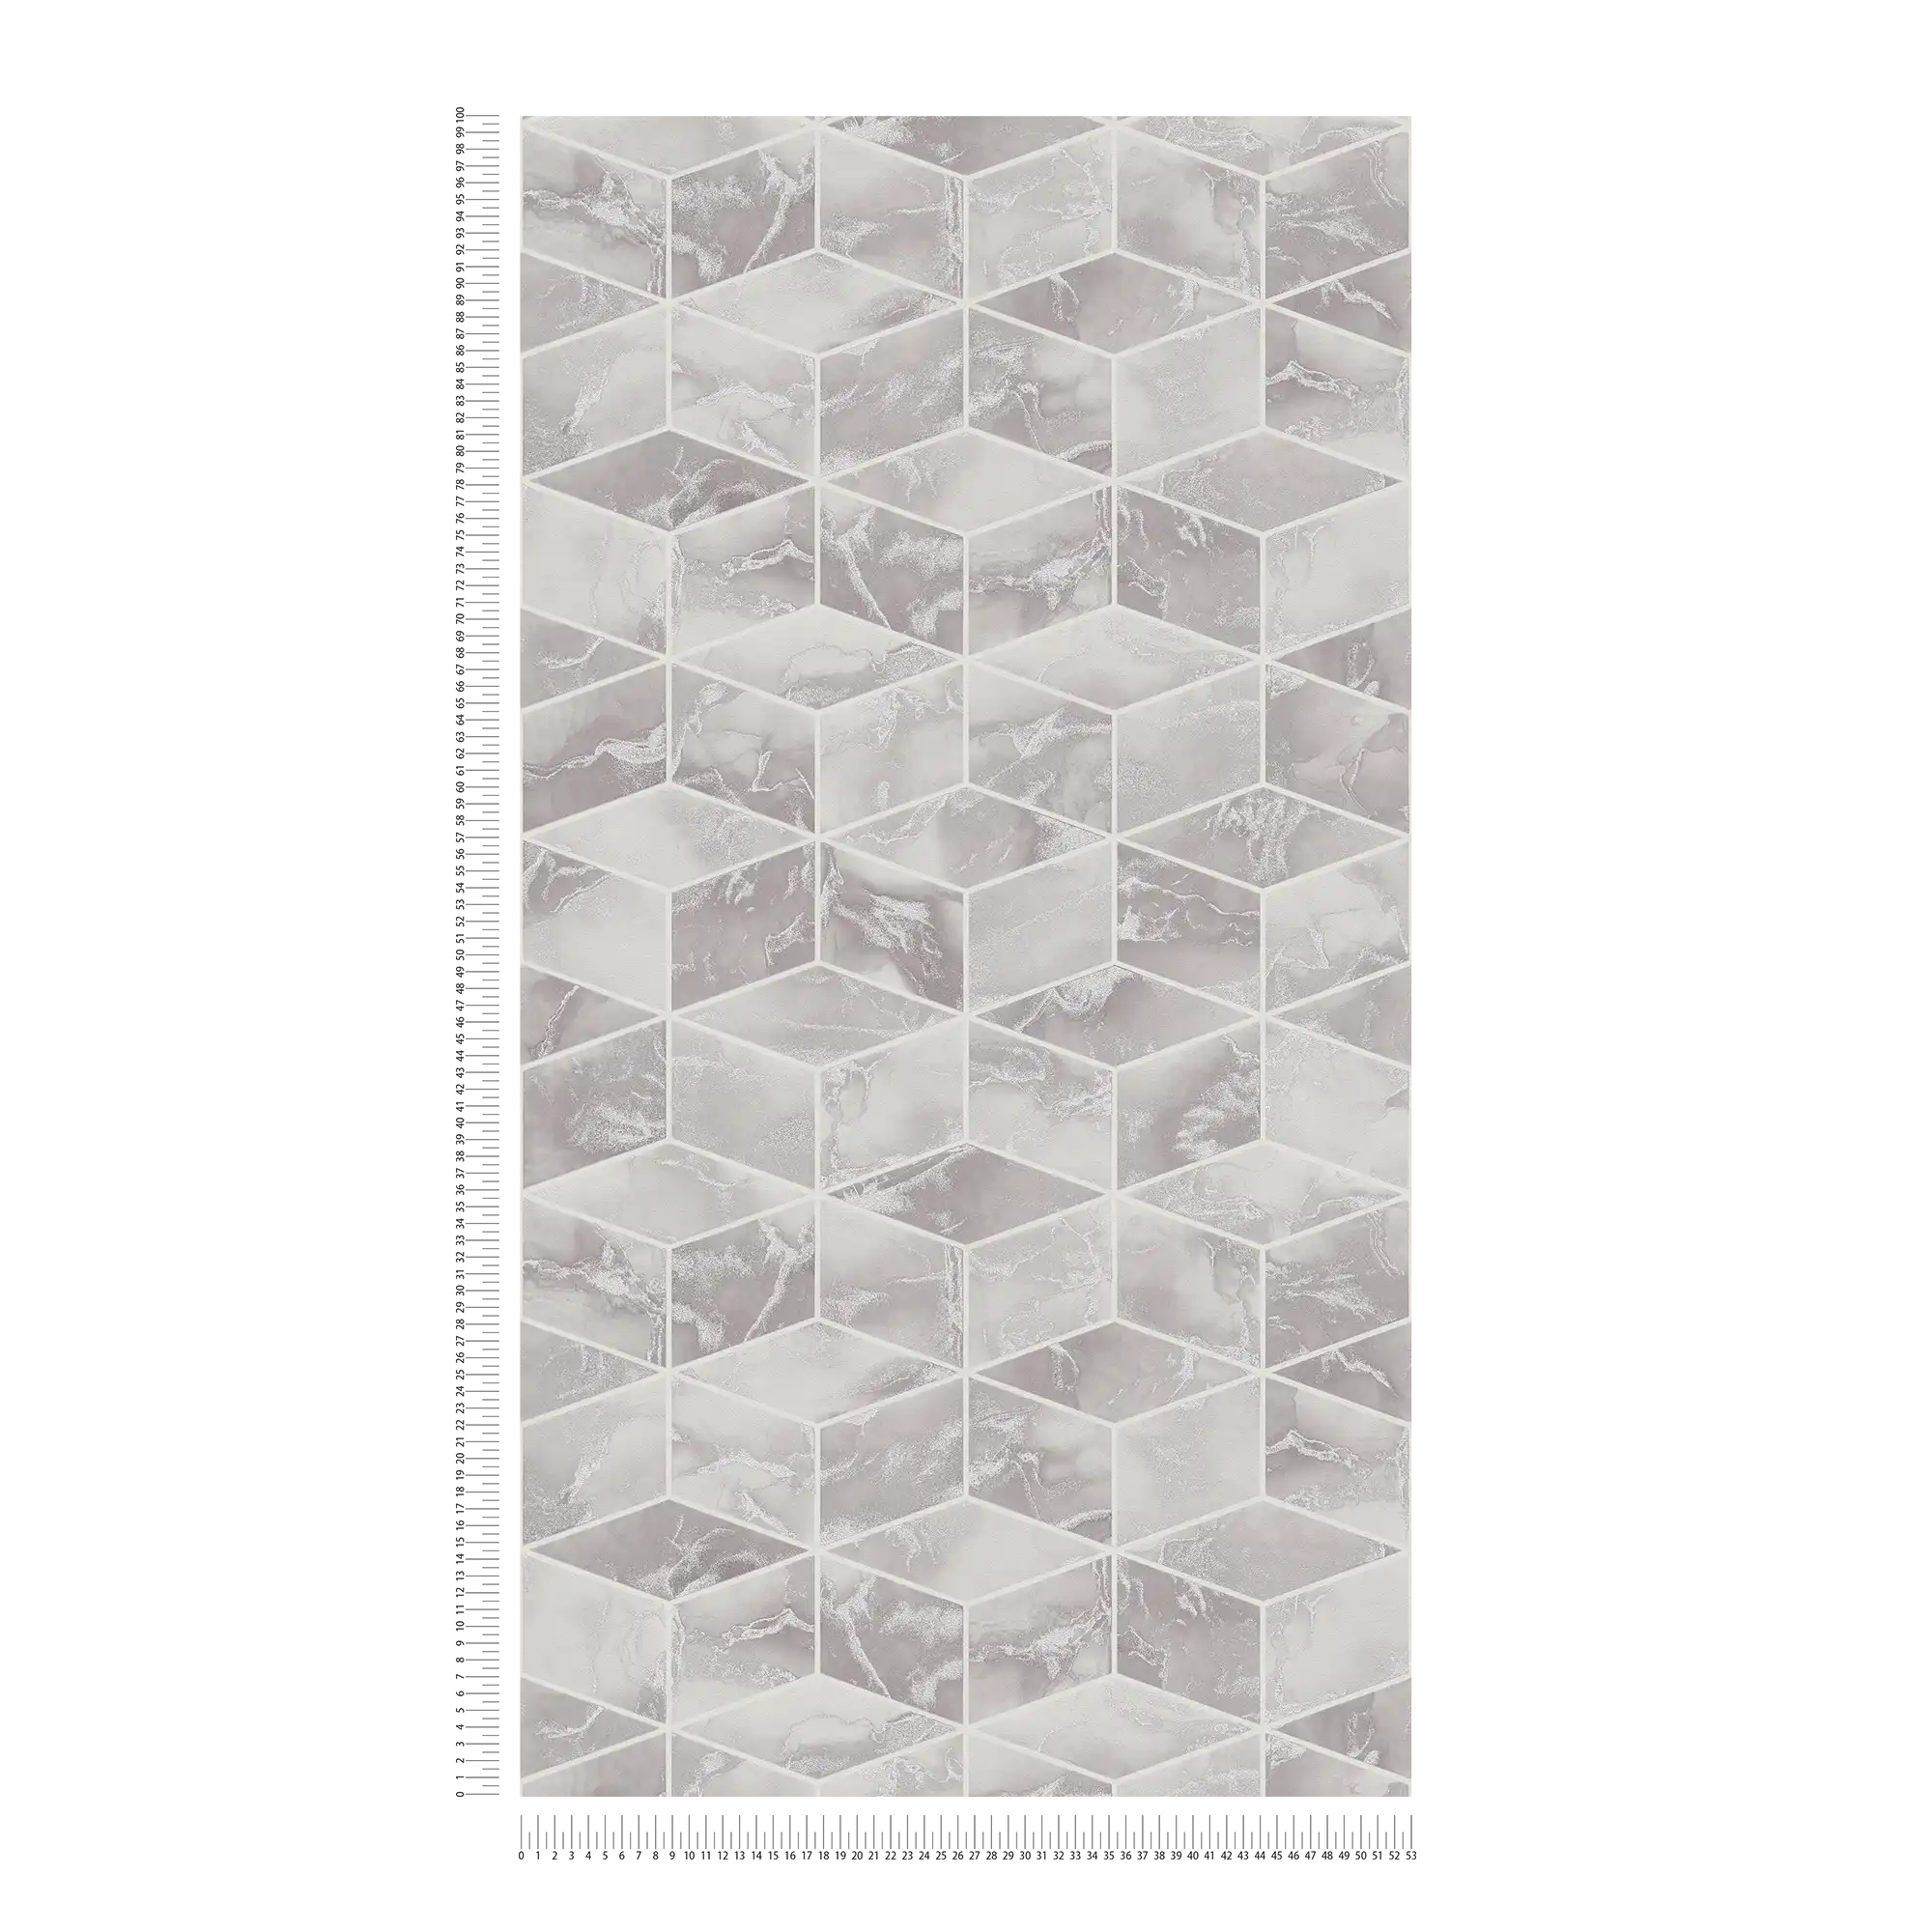             Carta da parati in tessuto non tessuto con piastrelle di marmo e accenti dorati - grigio, metallizzato, bianco
        